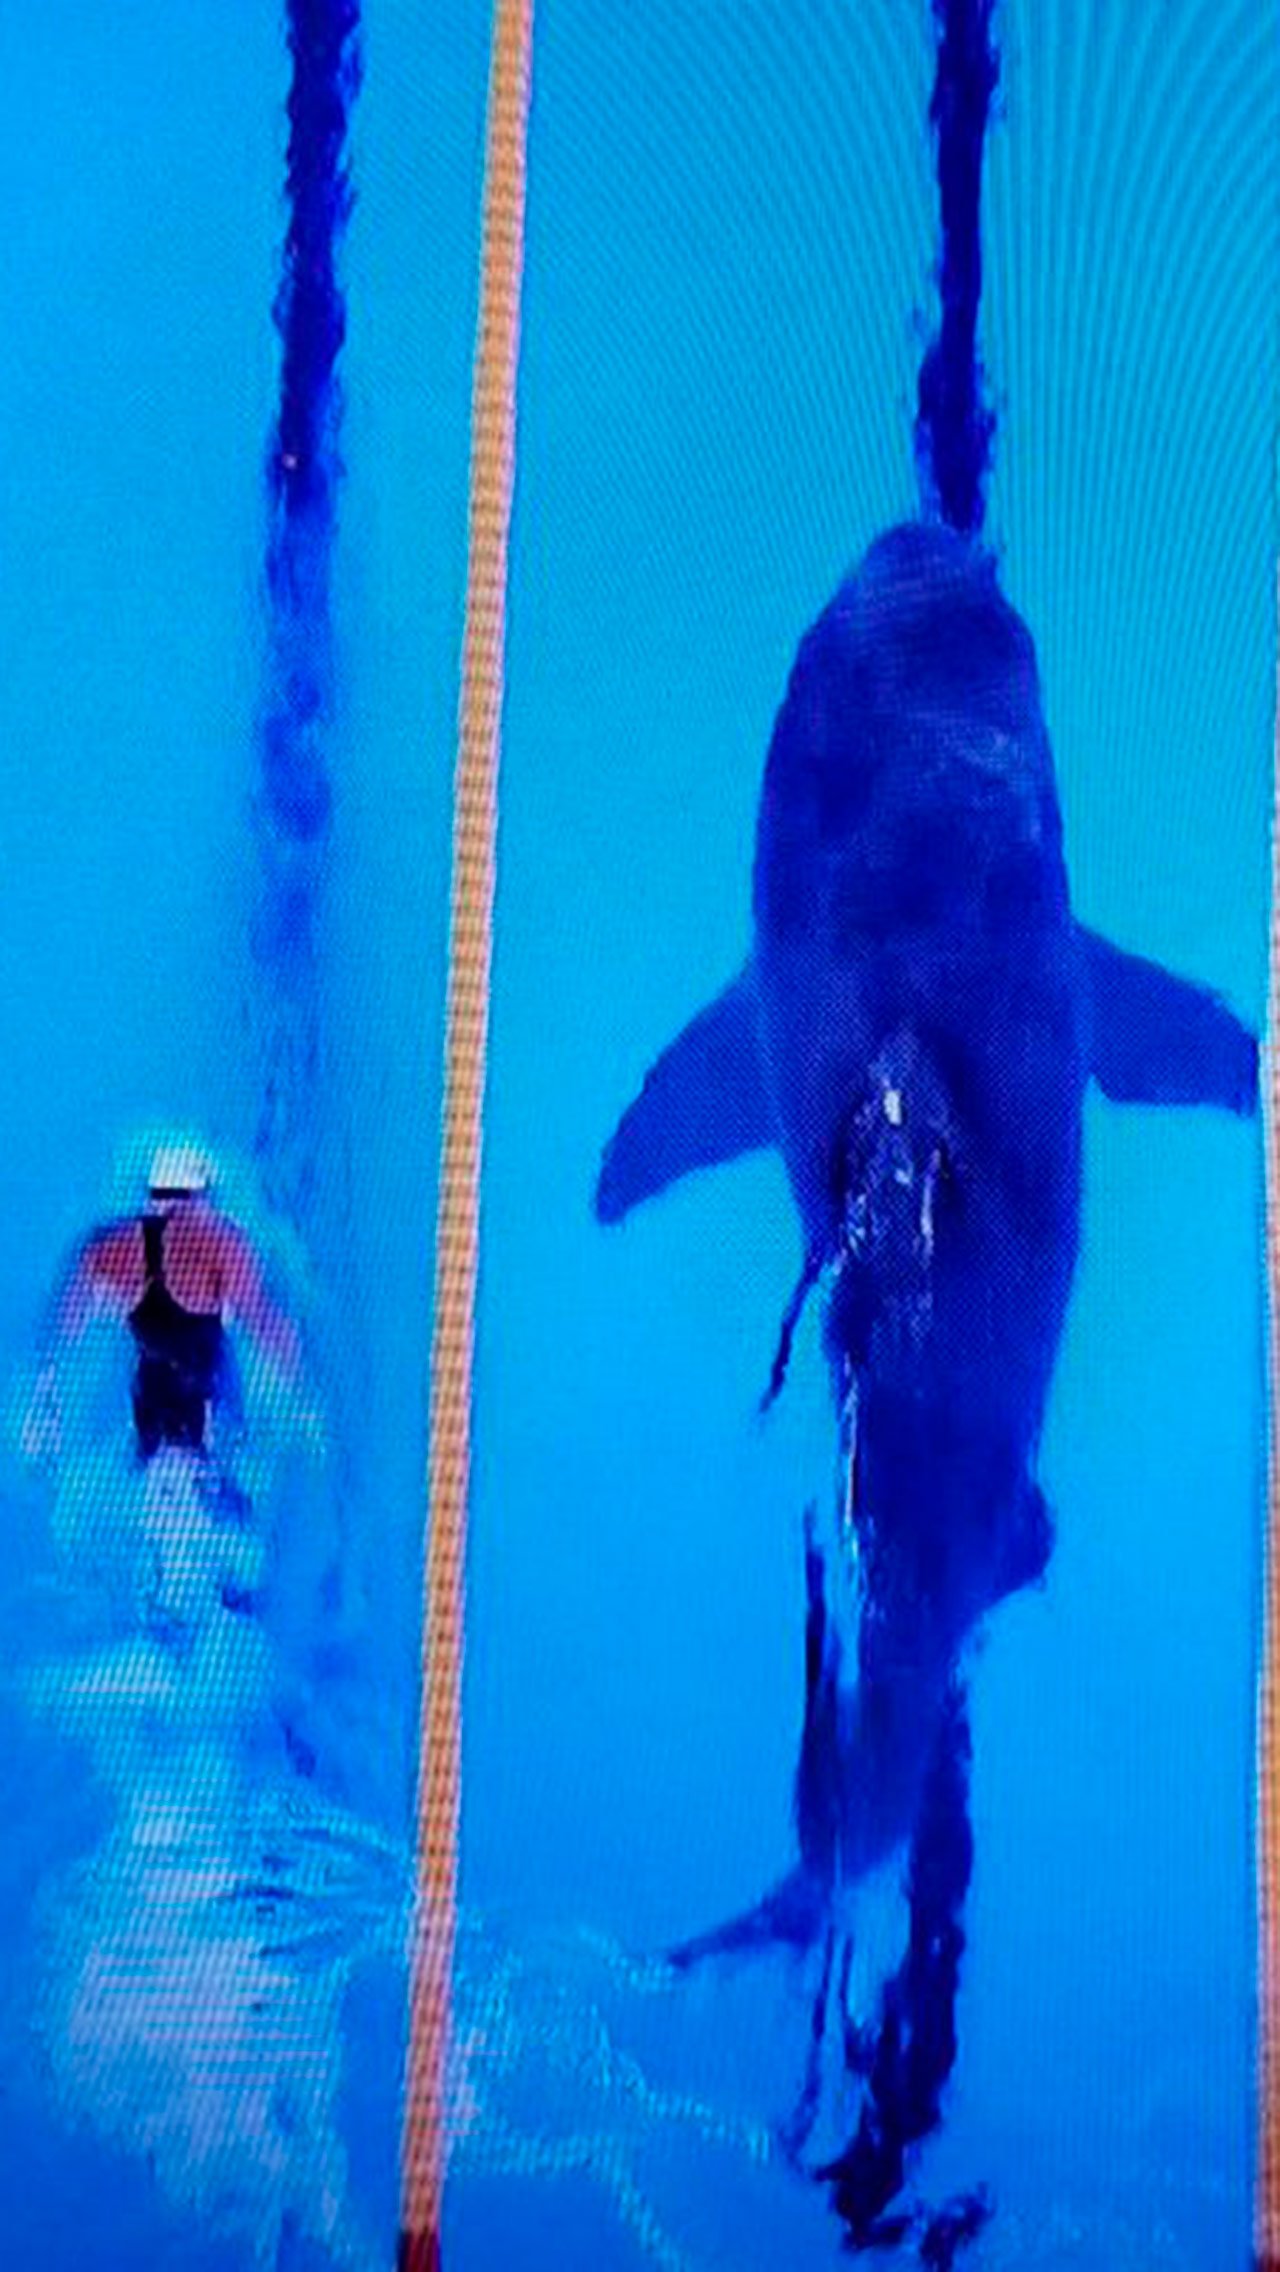 В 2017 году Фелпс принял участие в виртуальном заплыве на дистанции 100 метров против белой акулы. Пловец оказался медленнее на две секунды.<br/>
